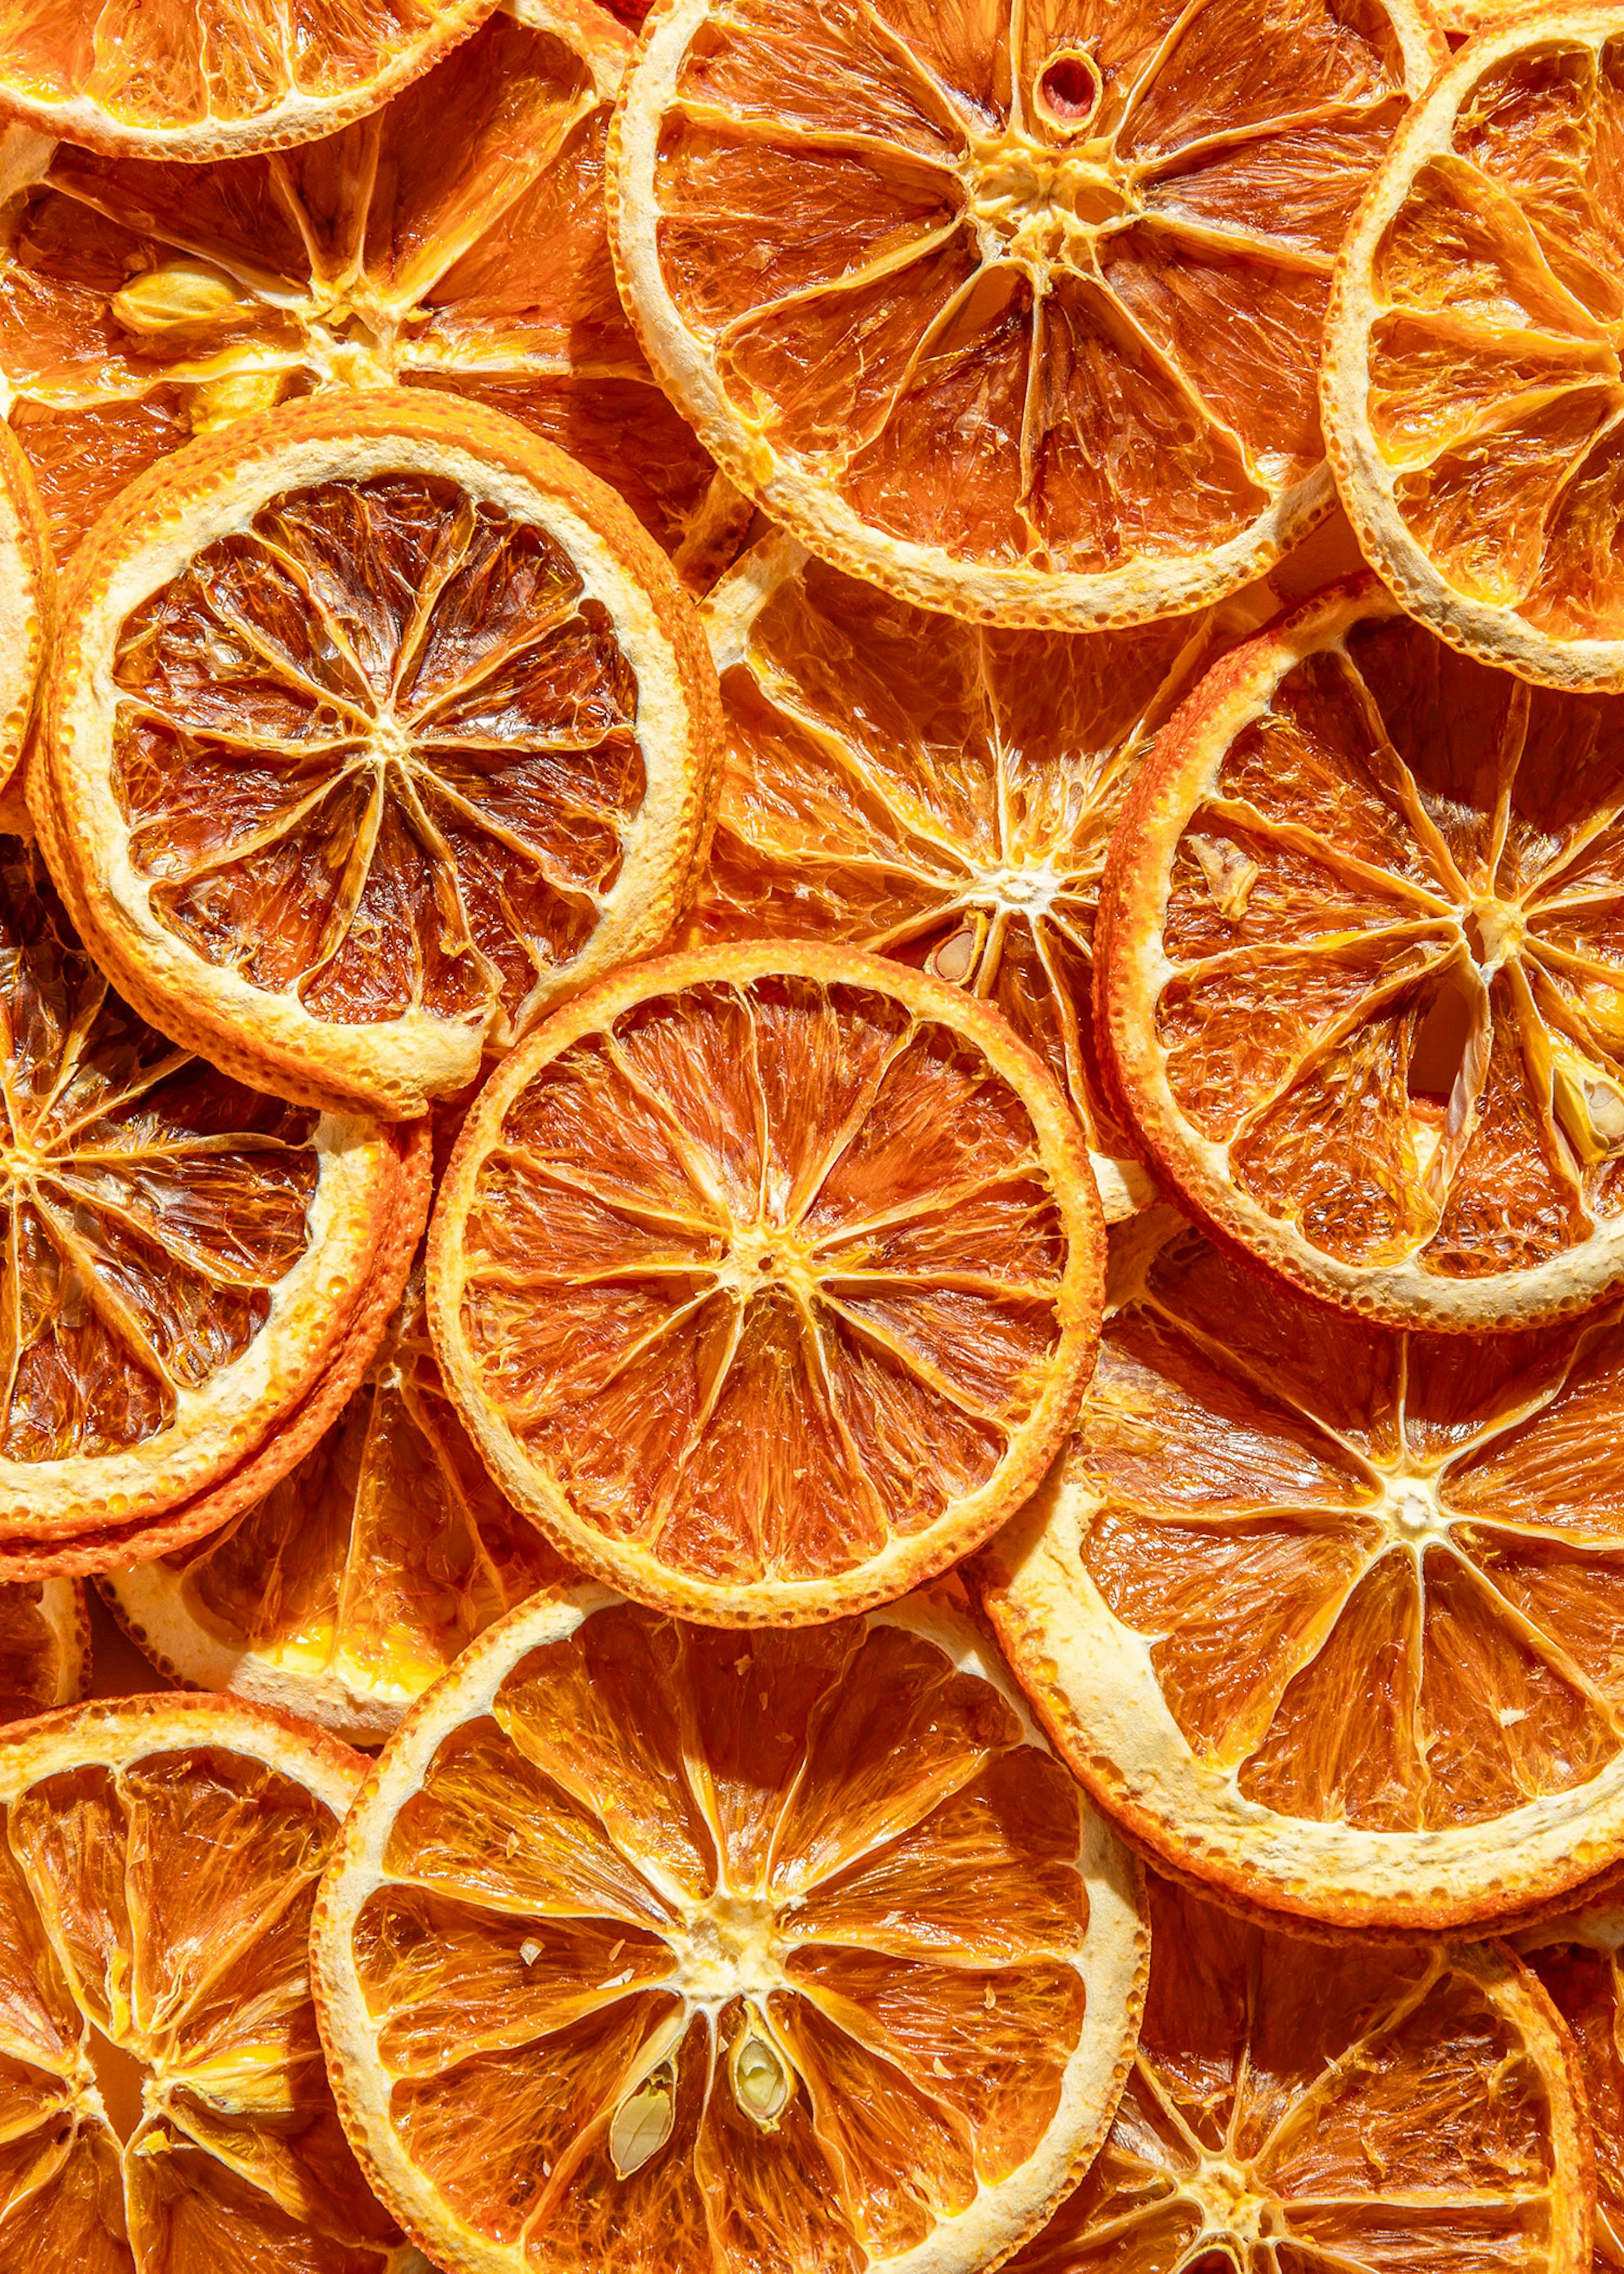 Decorazioni con arance essiccate e cannella: il tutorial facile